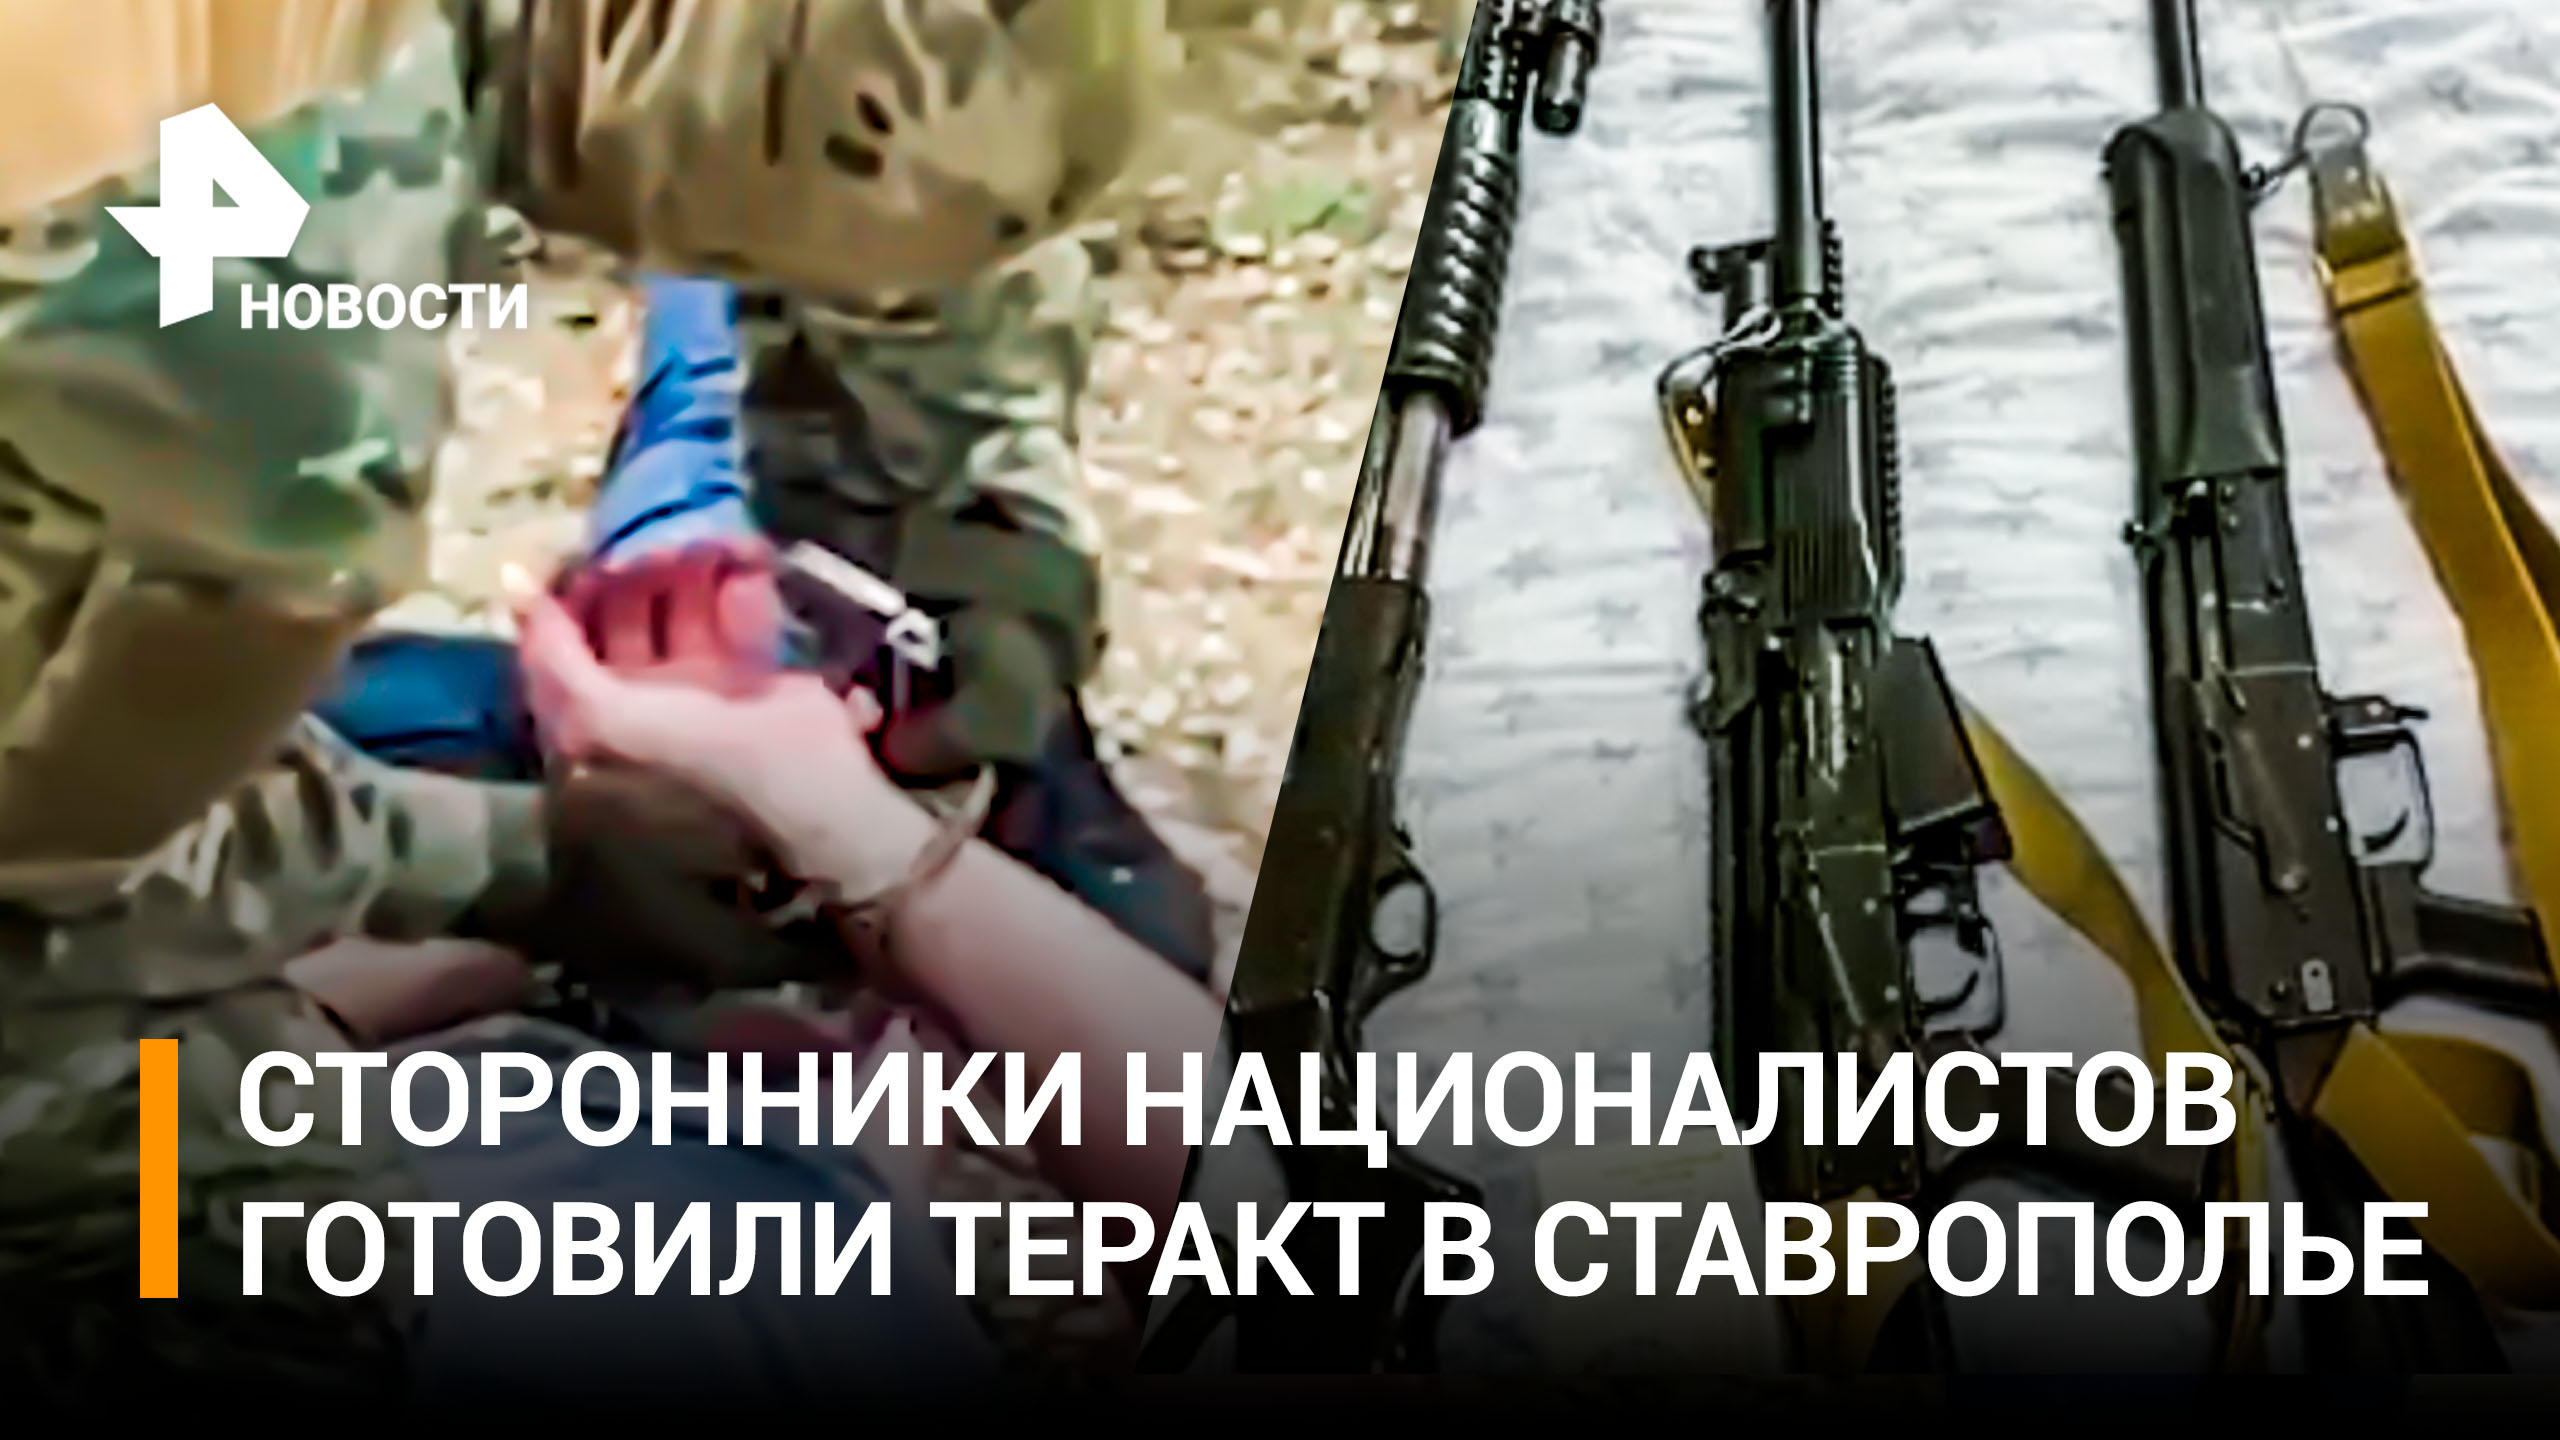 ФСБ пресекла теракт на Ставрополье, задержаны сторонники украинских националистов / РЕН Новости